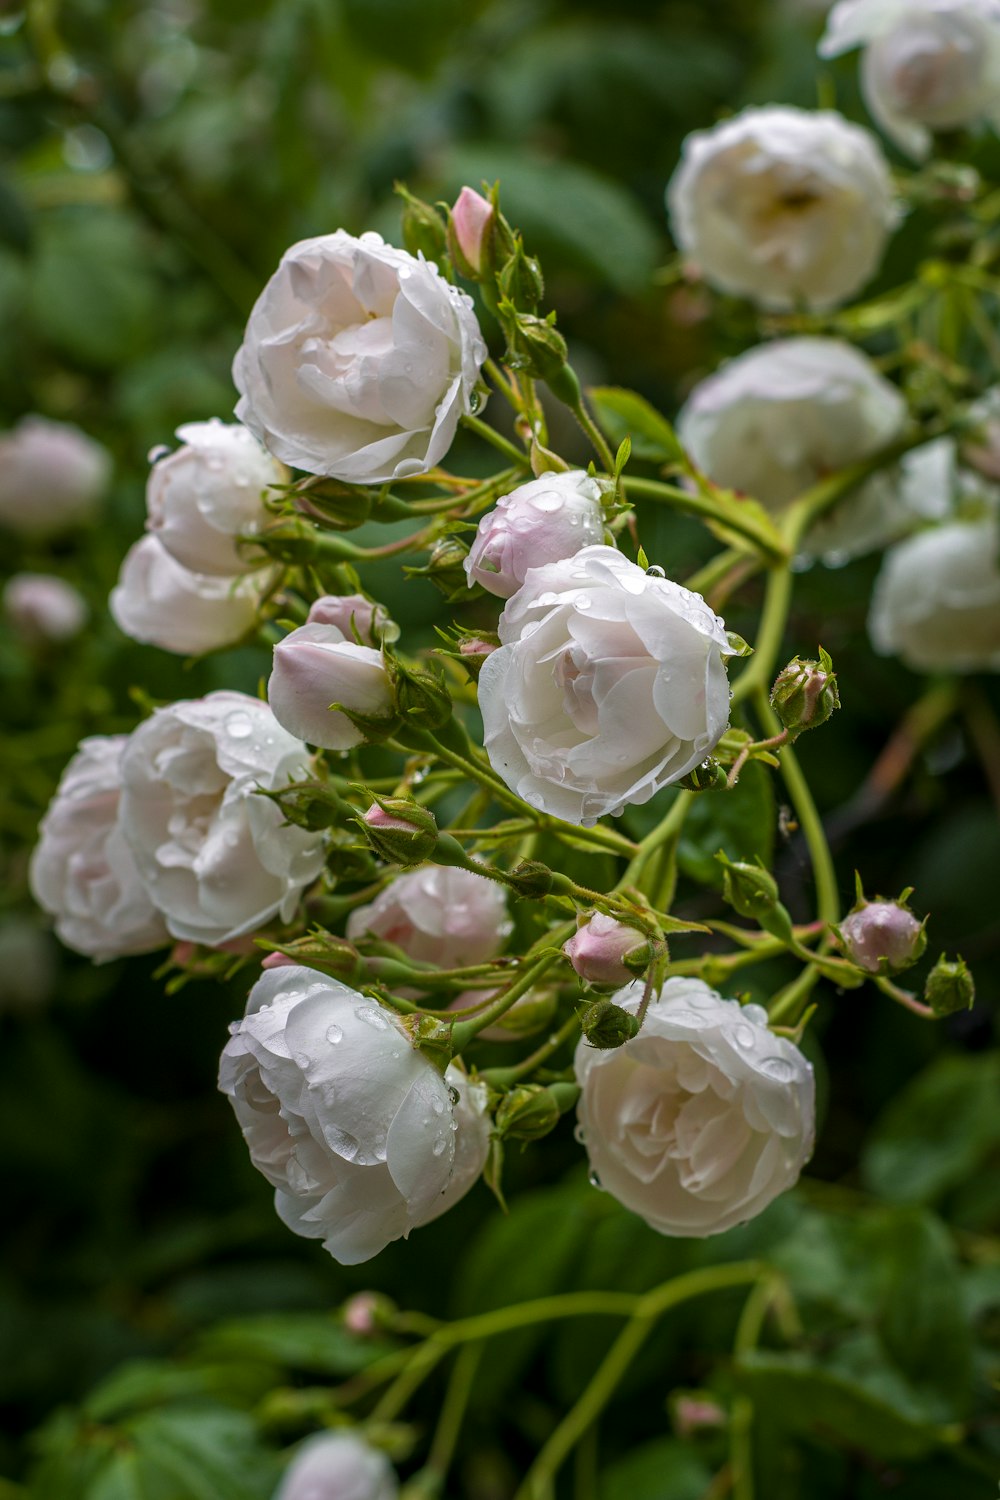 White flowers in tilt shift lens photo – Free Rose Image on Unsplash